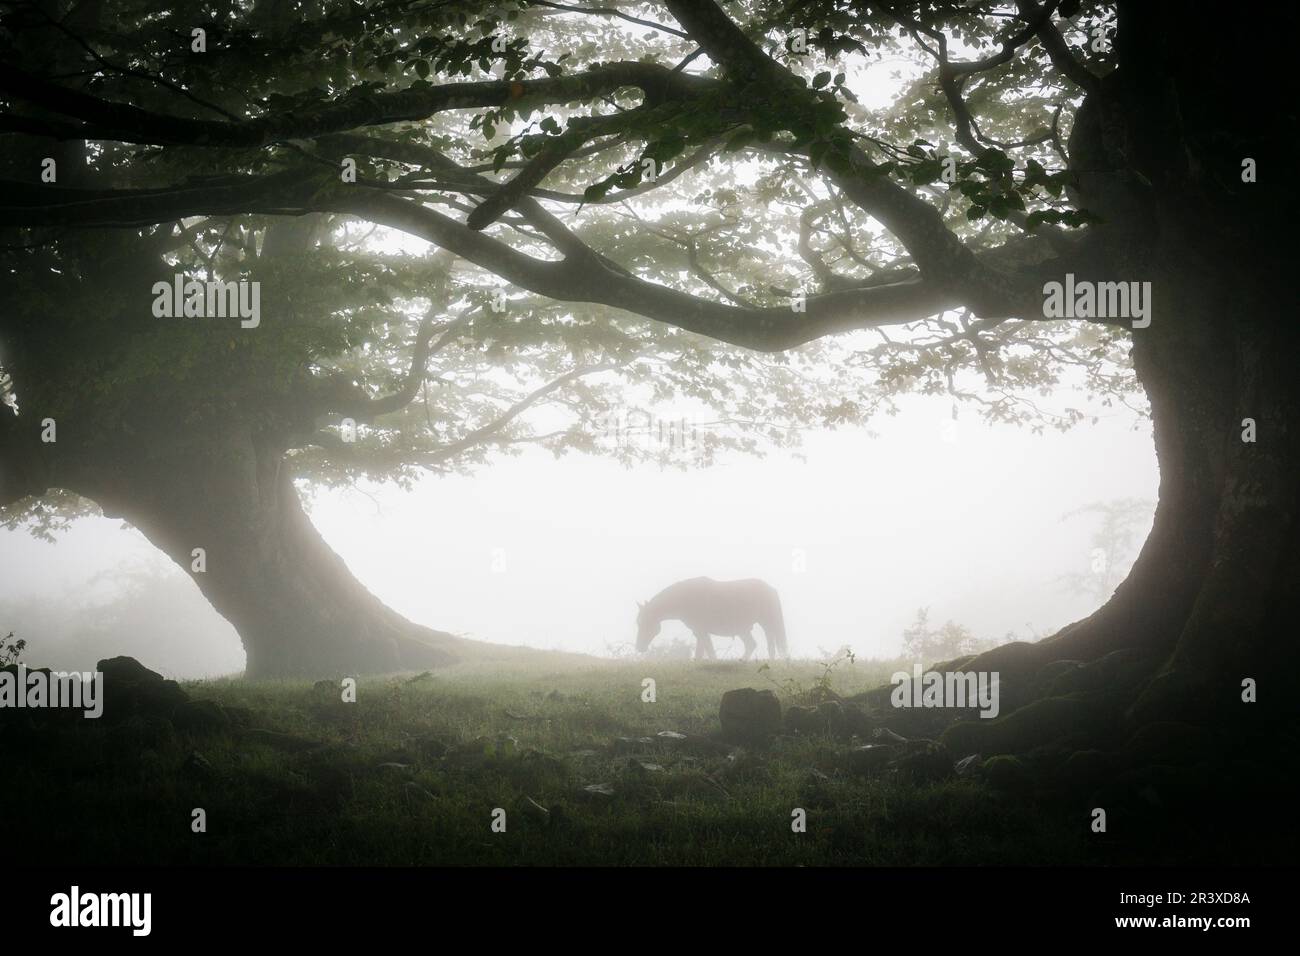 caballo bajo las hayas, fagus Sylvaticus, parque natural Gorbeia,Alava- Vizcaya, Euzkadi, Spain. Stock Photo